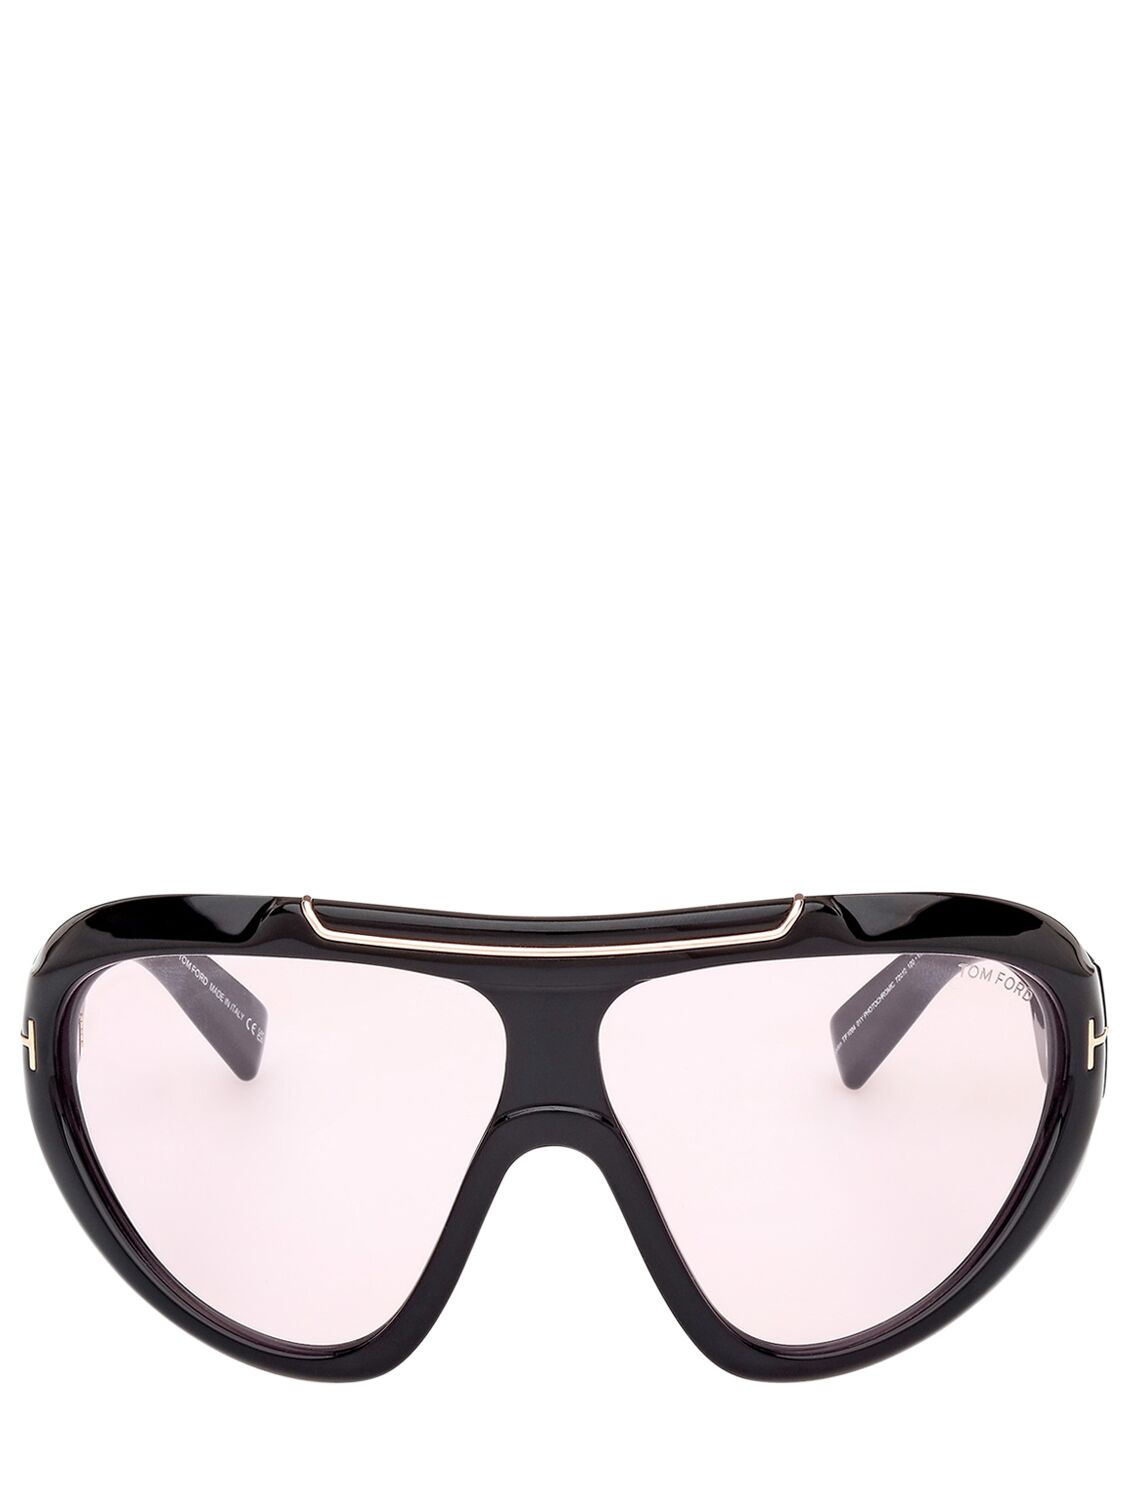 Tom Ford Linden Mask Sunglasses